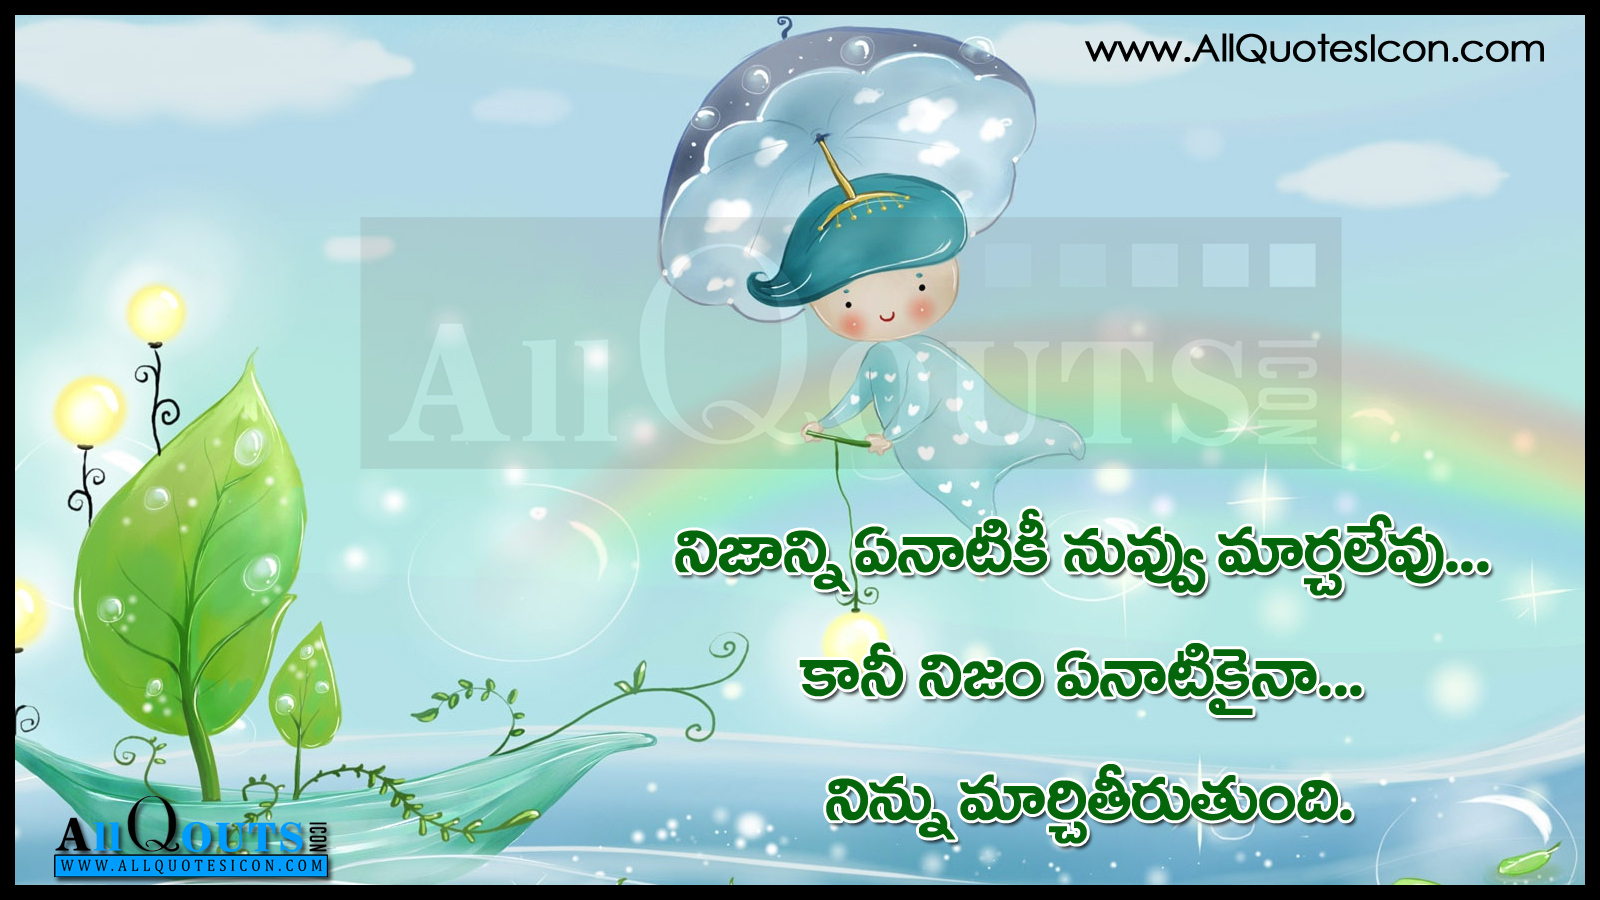 Telugu Manchi maatalu Nice Telugu Inspiring Life Quotations With Nice Awesome Telugu Motivational Telugu Life Quotes Life Thoughts